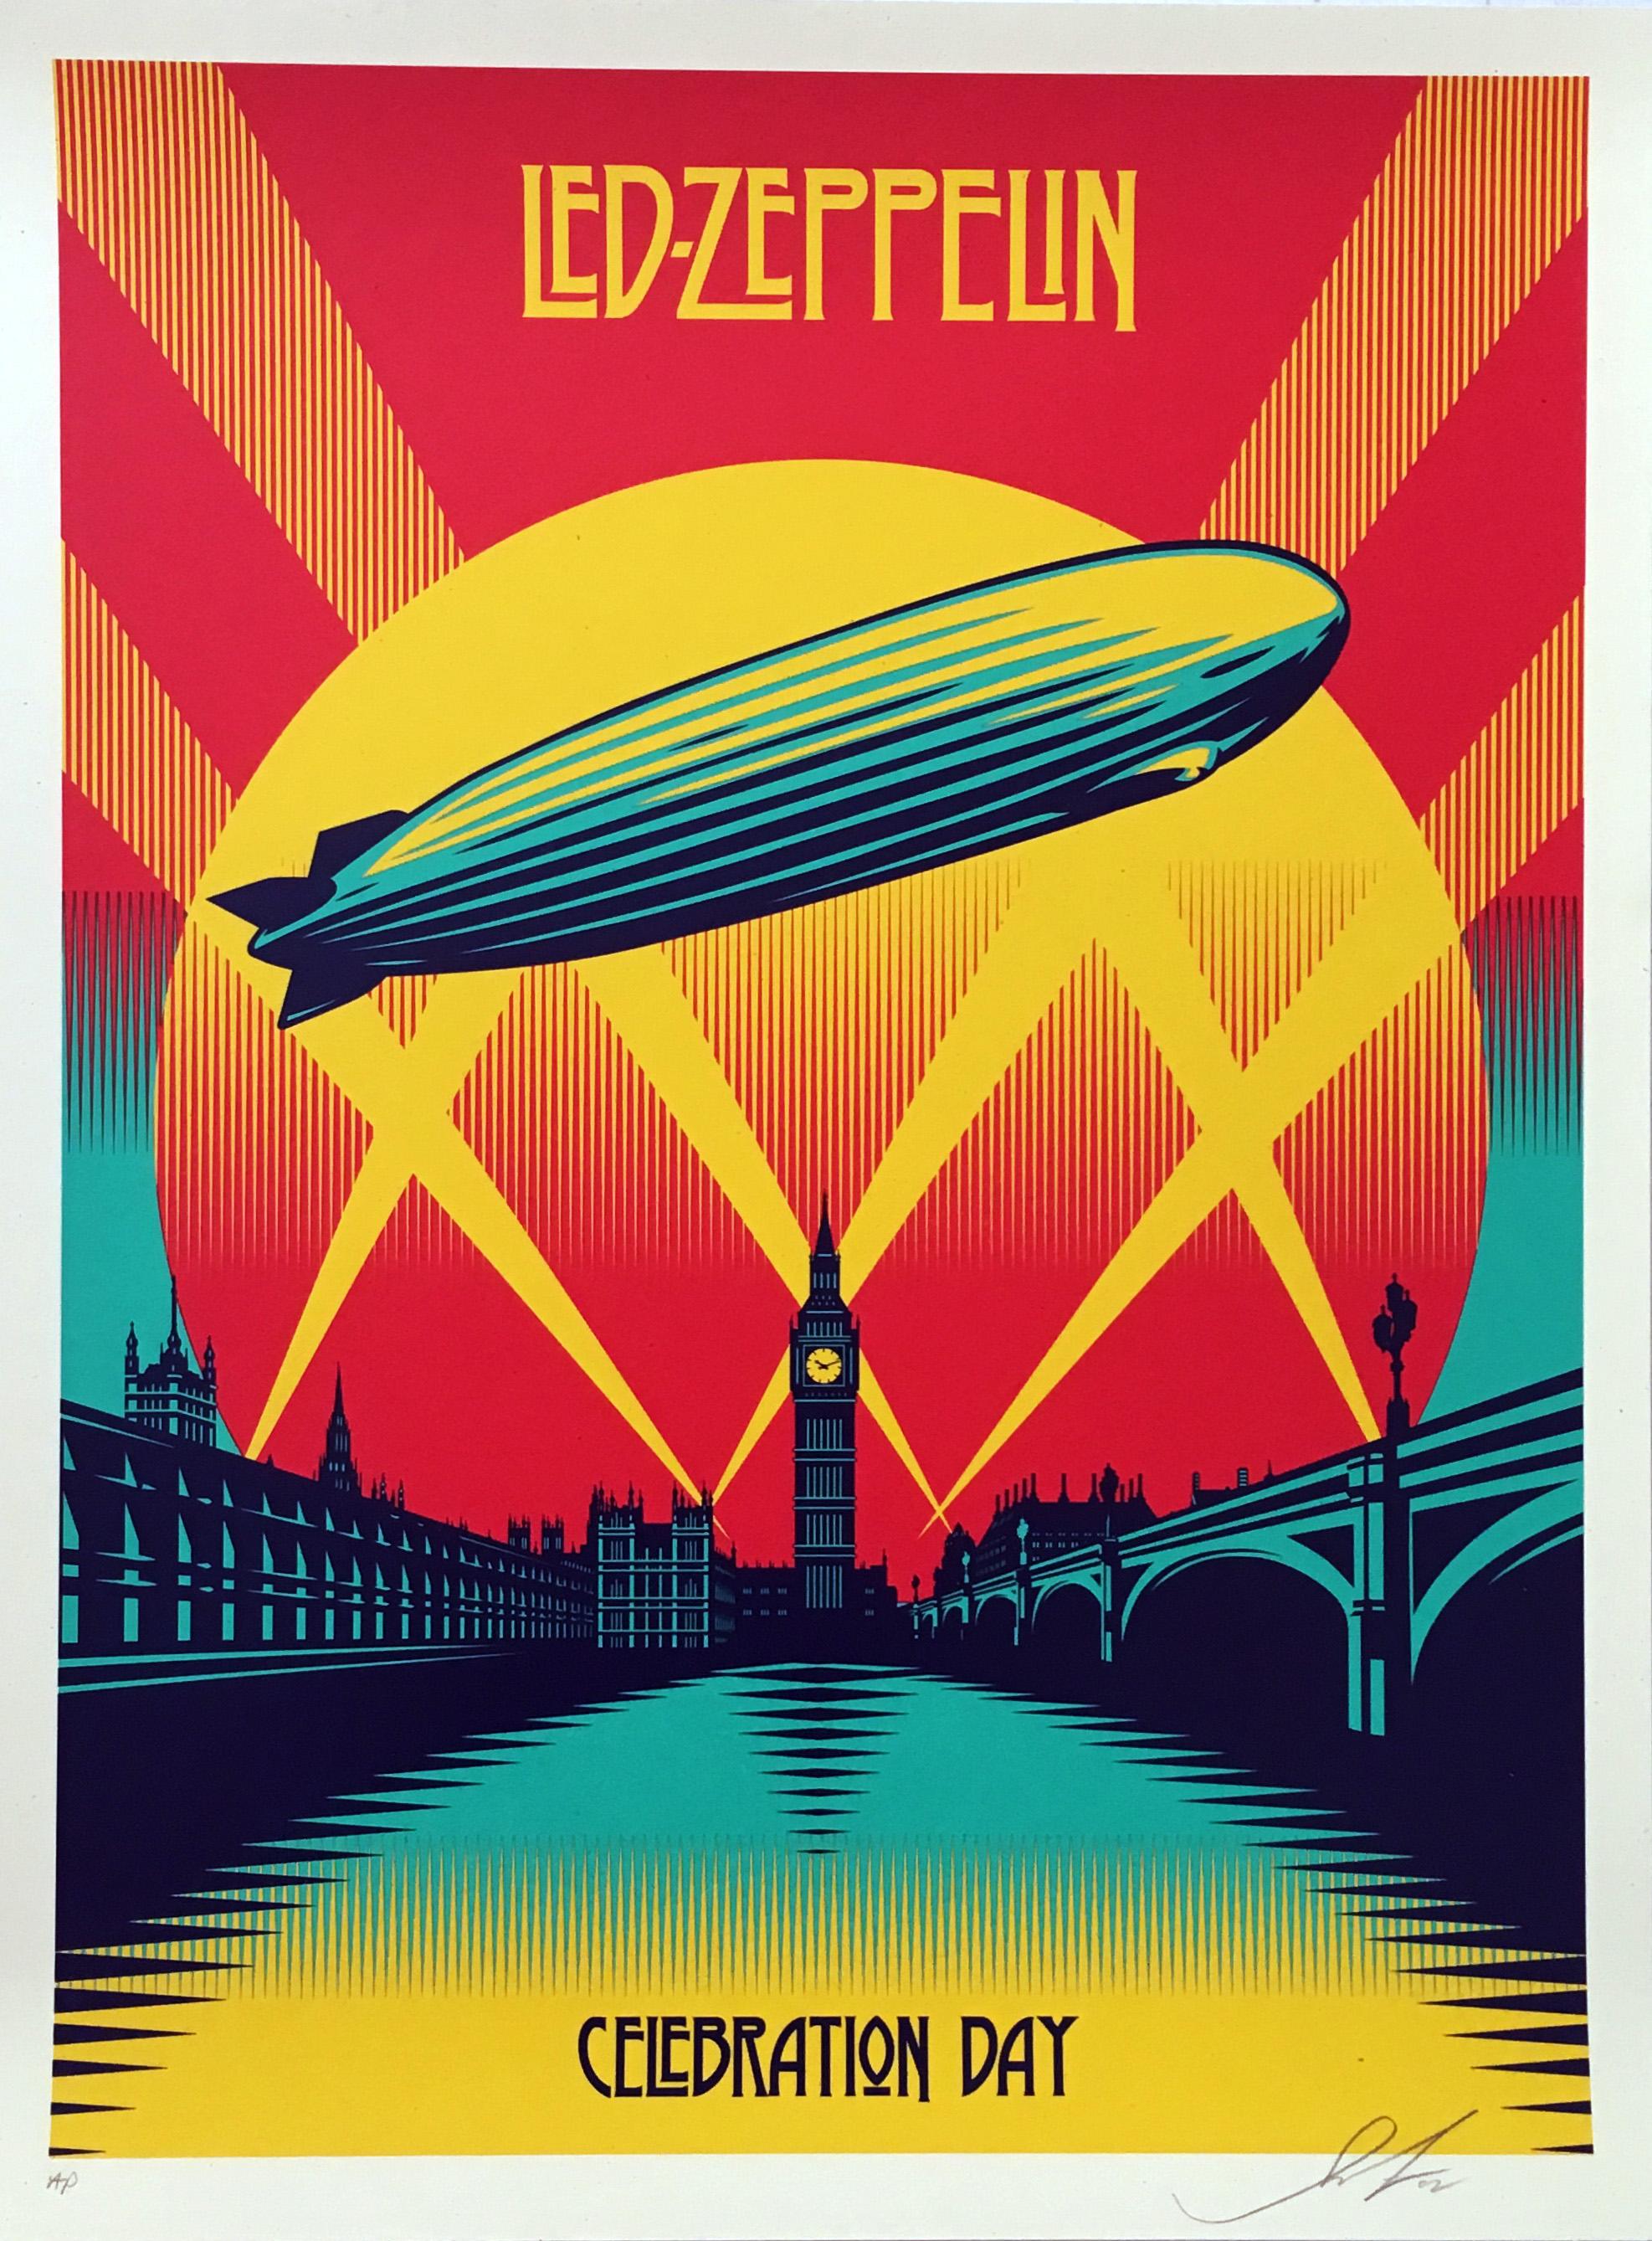 Siebdruck „Shepard Fairey Led Zeppelin Celebration Day“ von Shepard:: 2012 

Siebdruck in 4 Farben 
18 x 24 Zoll 
Ausgezeichneter Zustand mit Ausnahme von einigen sehr geringen Gebrauchsspuren. Gelagert flach in einer Archivierungsfassung. 
Auf der